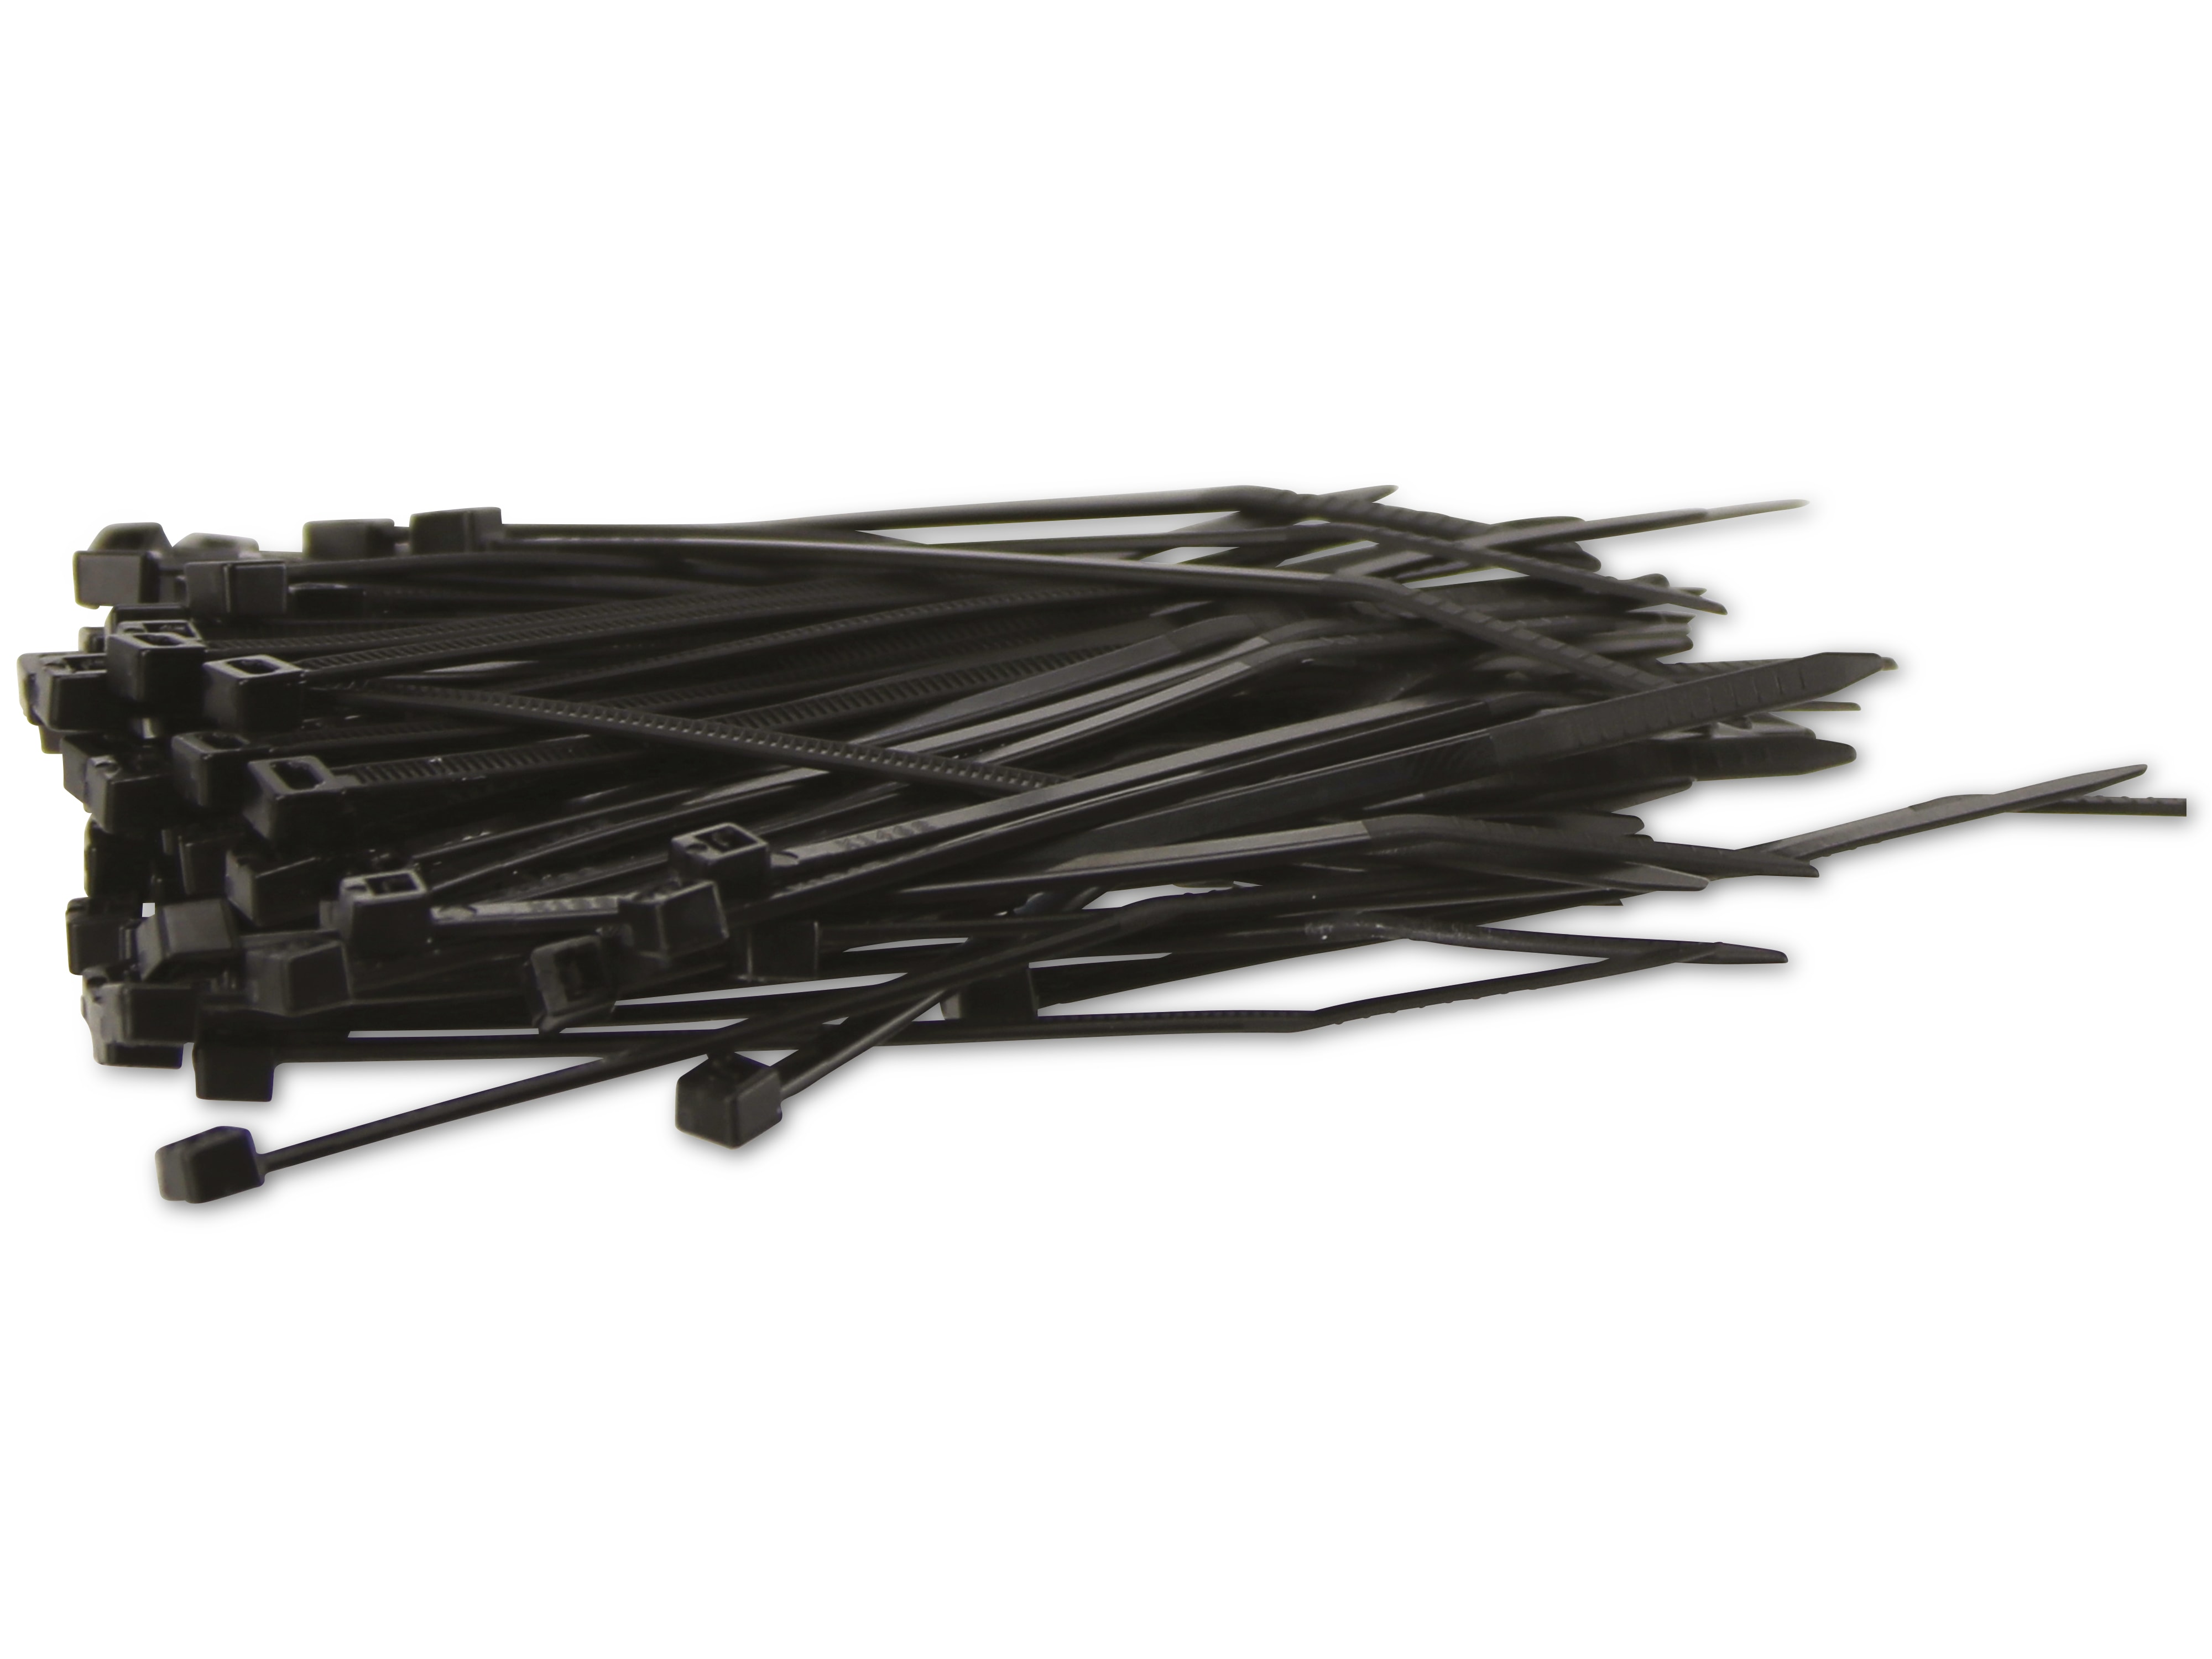 KSS Kabelbinder-Sortiment Polyamid 6.6, schwarz, 80x2,5, UV-beständig, 100 Stück